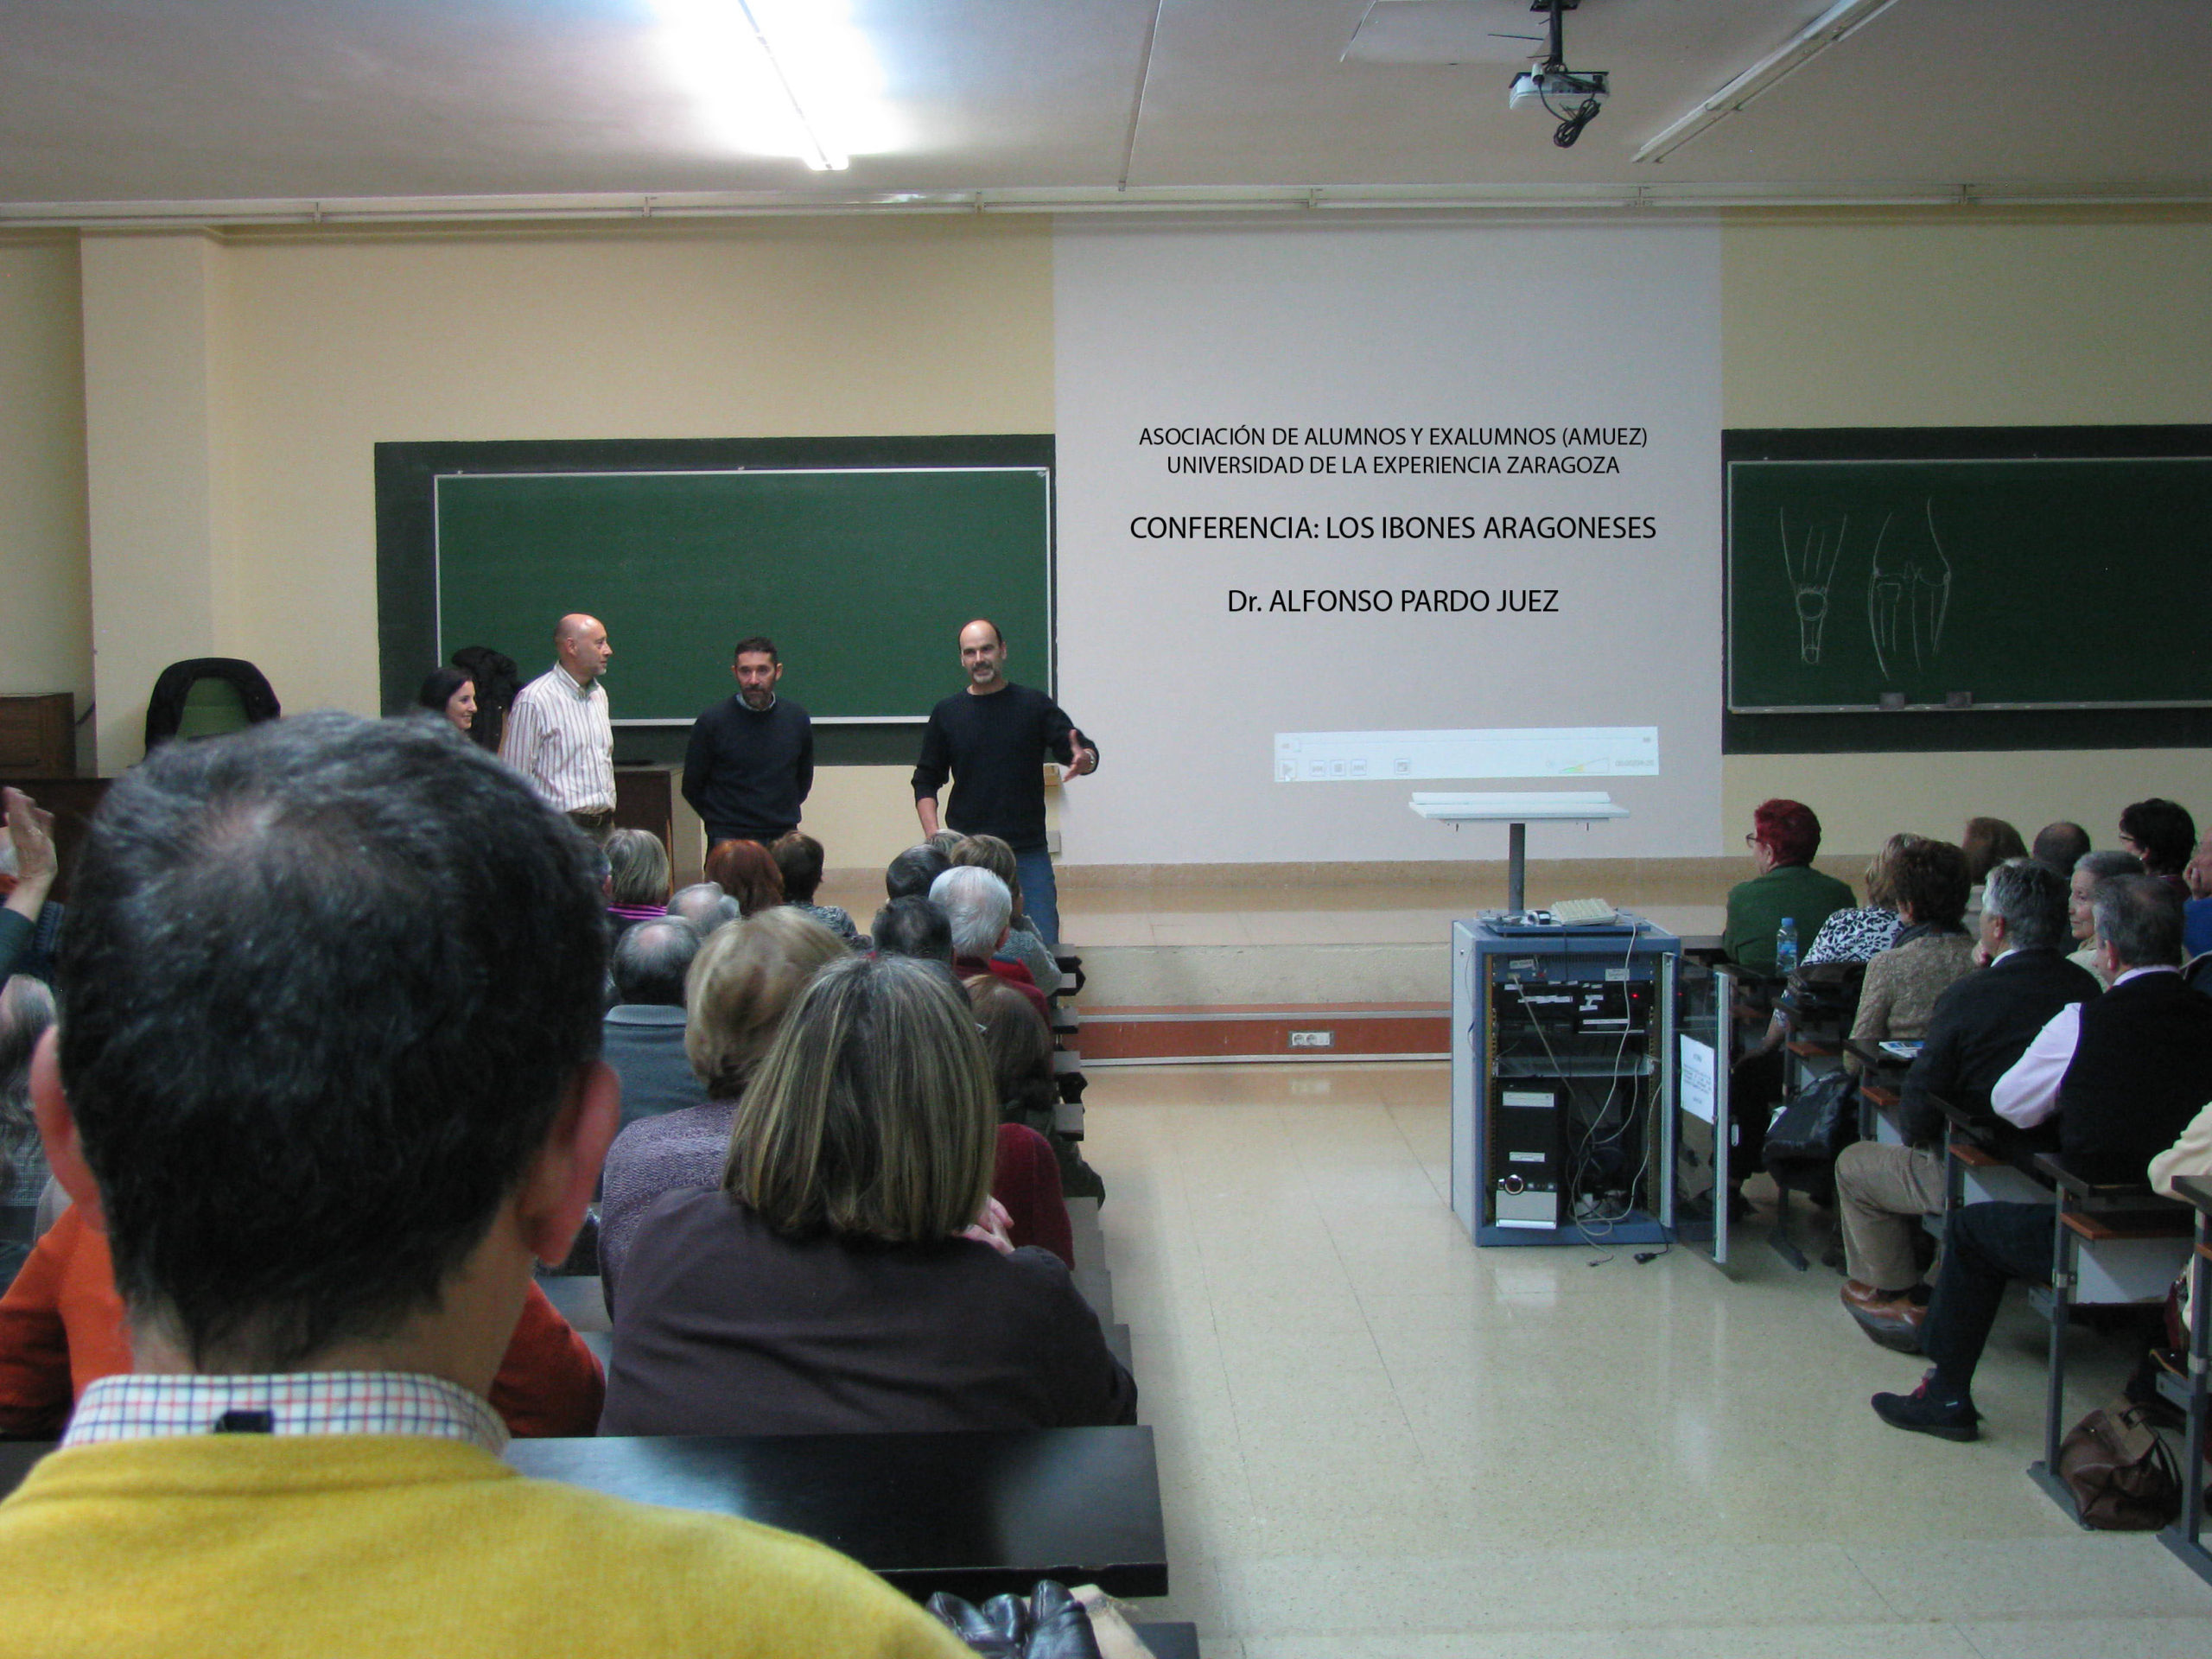 Conferencia "Los ibones aragoneses"